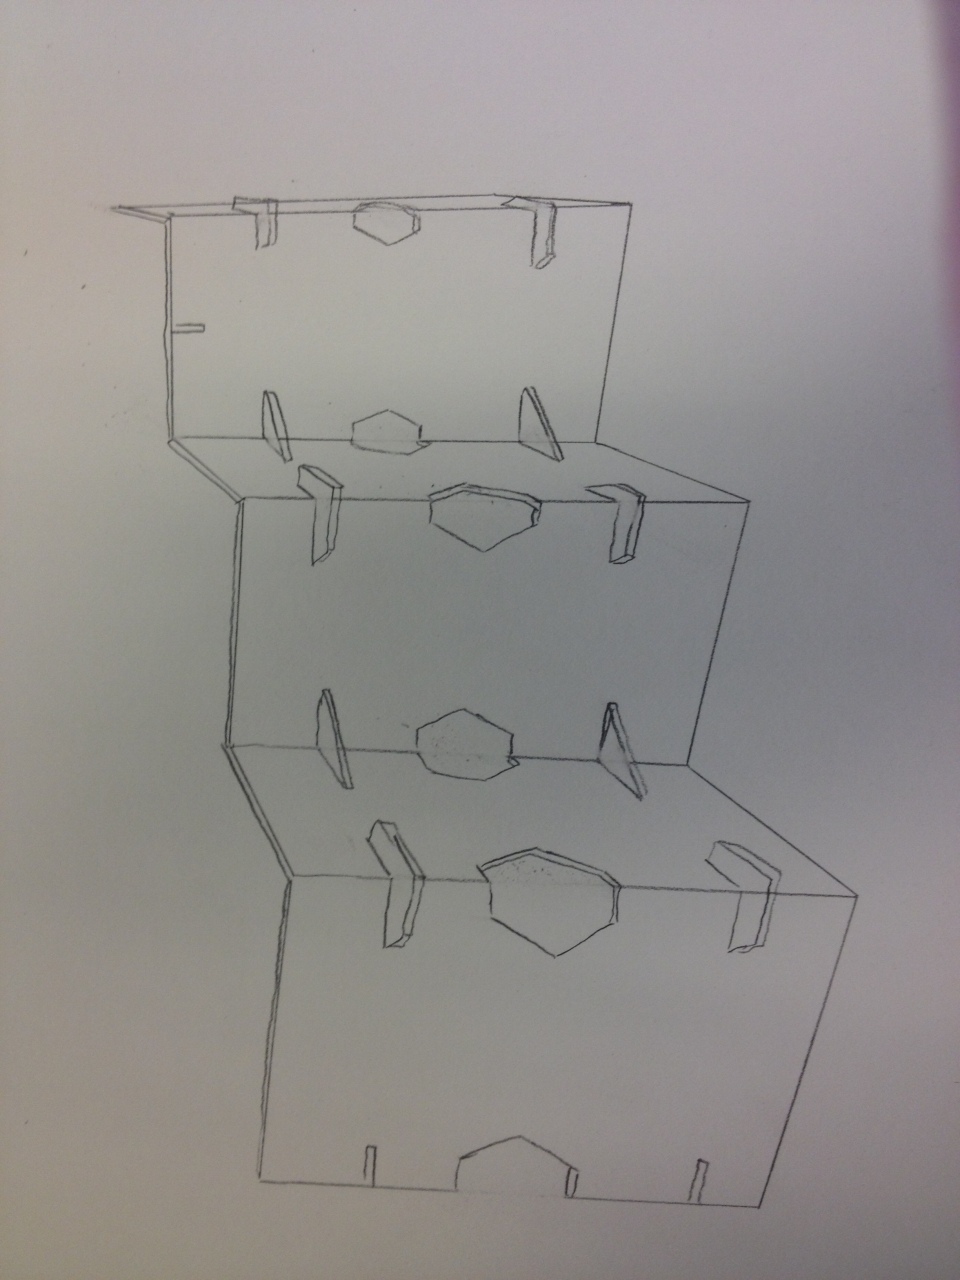 modular construction sketch